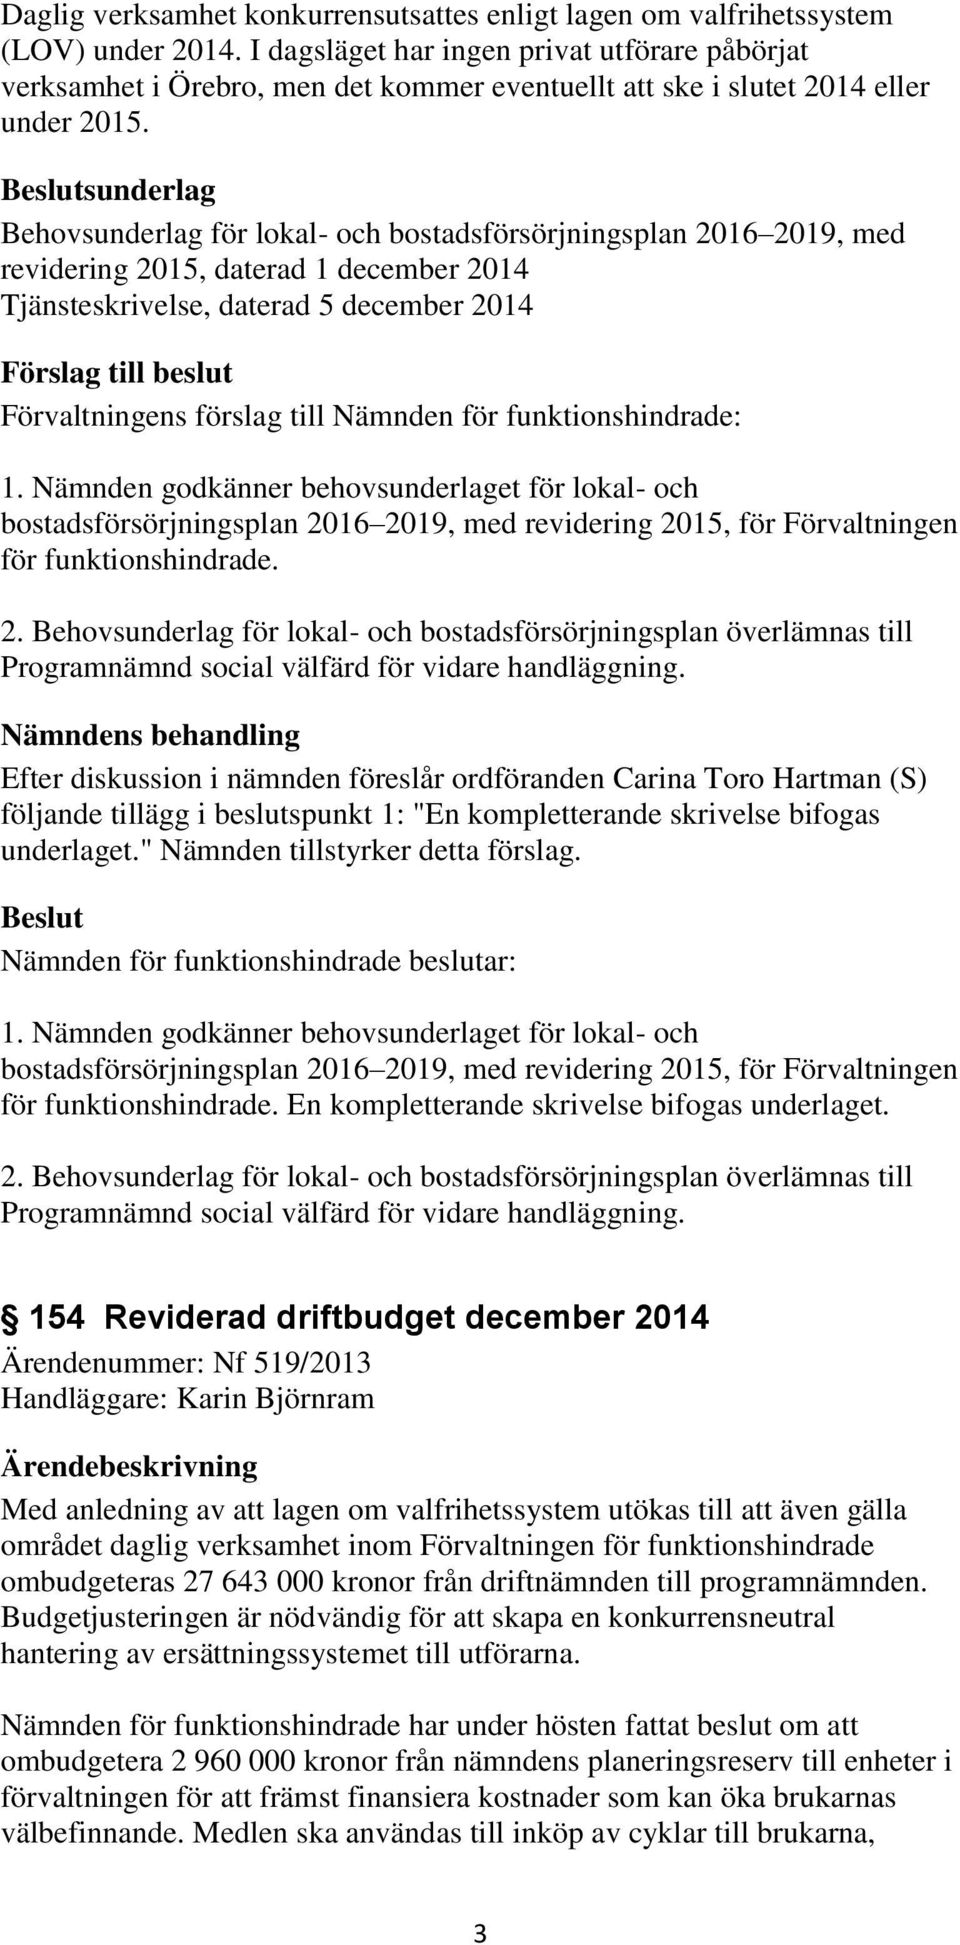 sunderlag Behovsunderlag för lokal- och bostadsförsörjningsplan 2016 2019, med revidering 2015, daterad 1 december 2014 Tjänsteskrivelse, daterad 5 december 2014 1.